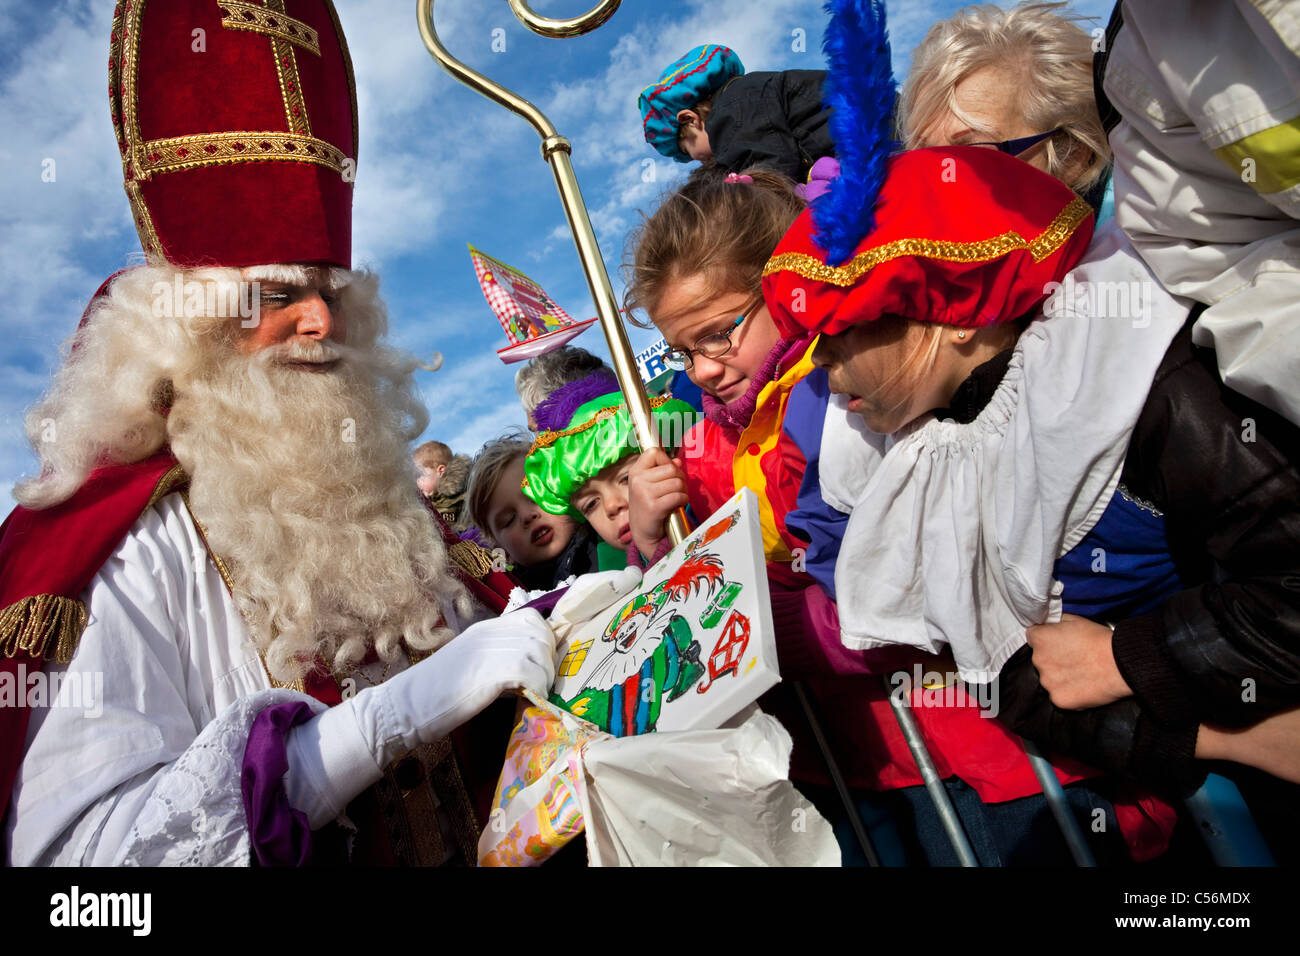 Les Pays-Bas, Loosdrecht, Festival de Sinterklaas ou Sint Nicolaas, célébrée chaque année le réveillon de Saint Nicolas le 5 décembre. Banque D'Images